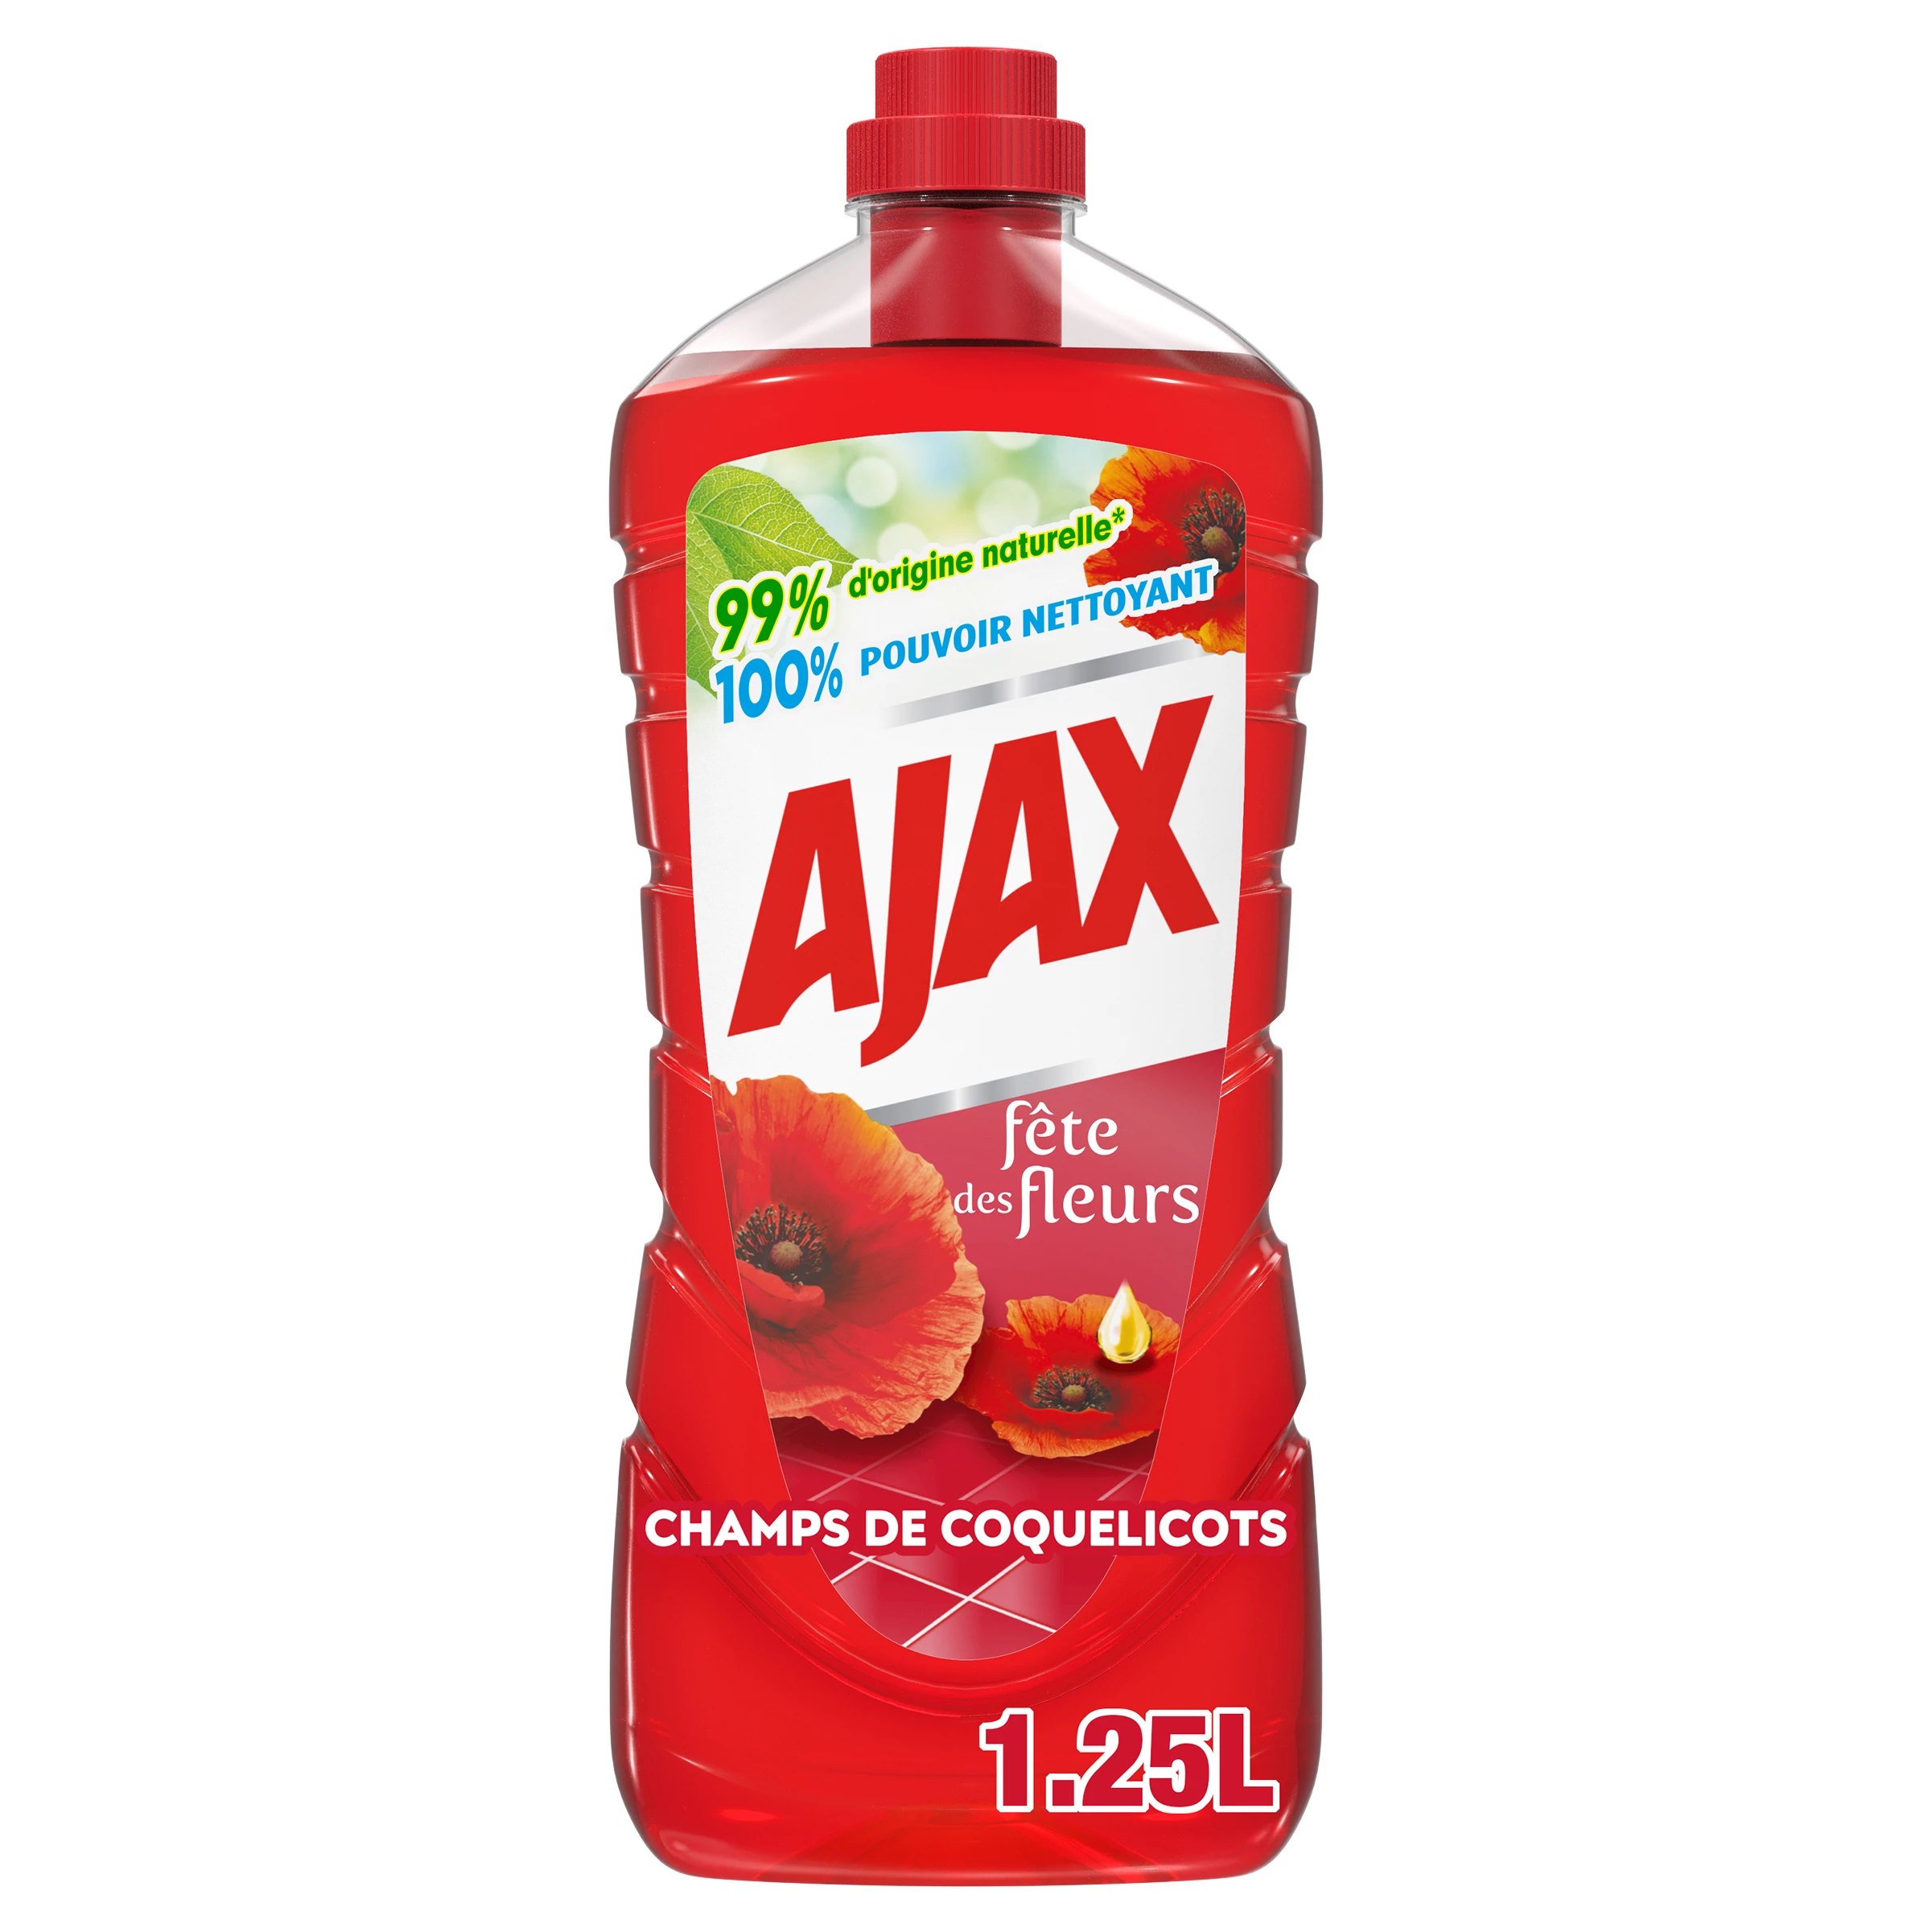 多表面家用清洁剂 - AJAX